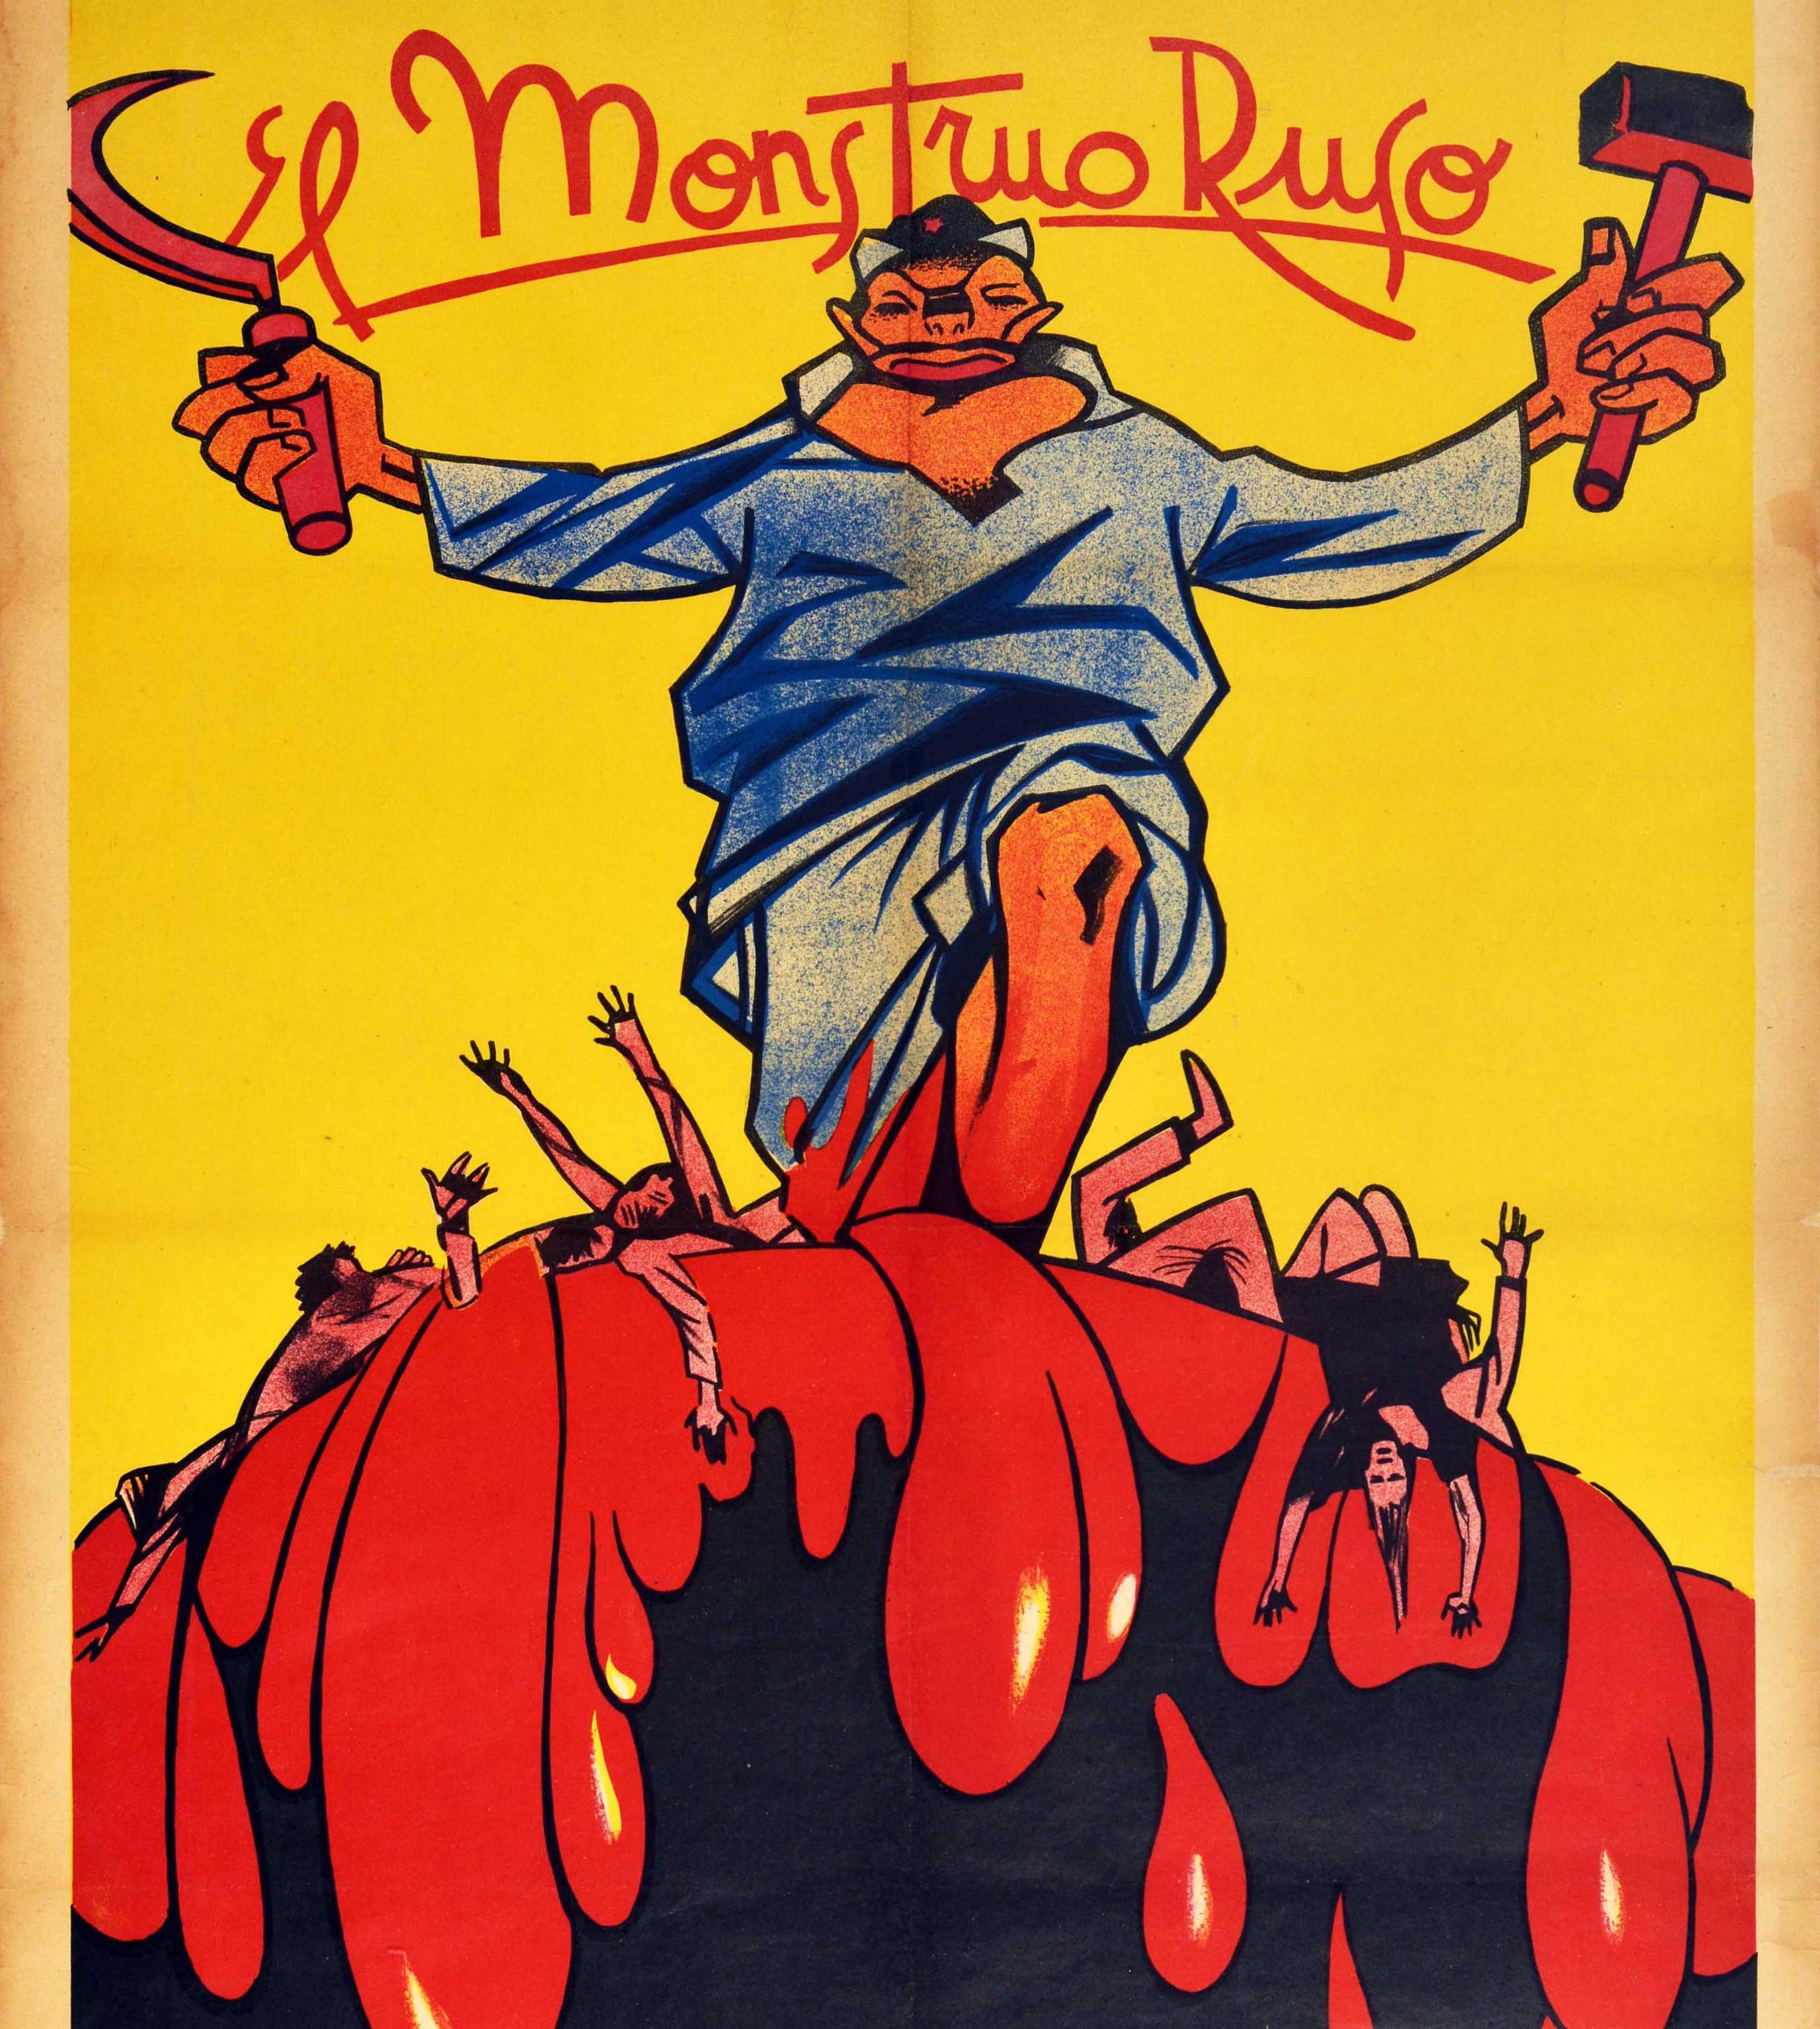 Originales antikommunistisches Propagandaplakat aus der Zeit des Spanischen Bürgerkriegs - El Monstruo Ruso / Das russische Ungeheuer - mit einer grotesken Figur, die einen Hut mit einem roten kommunistischen Stern trägt und in jeder Hand einen